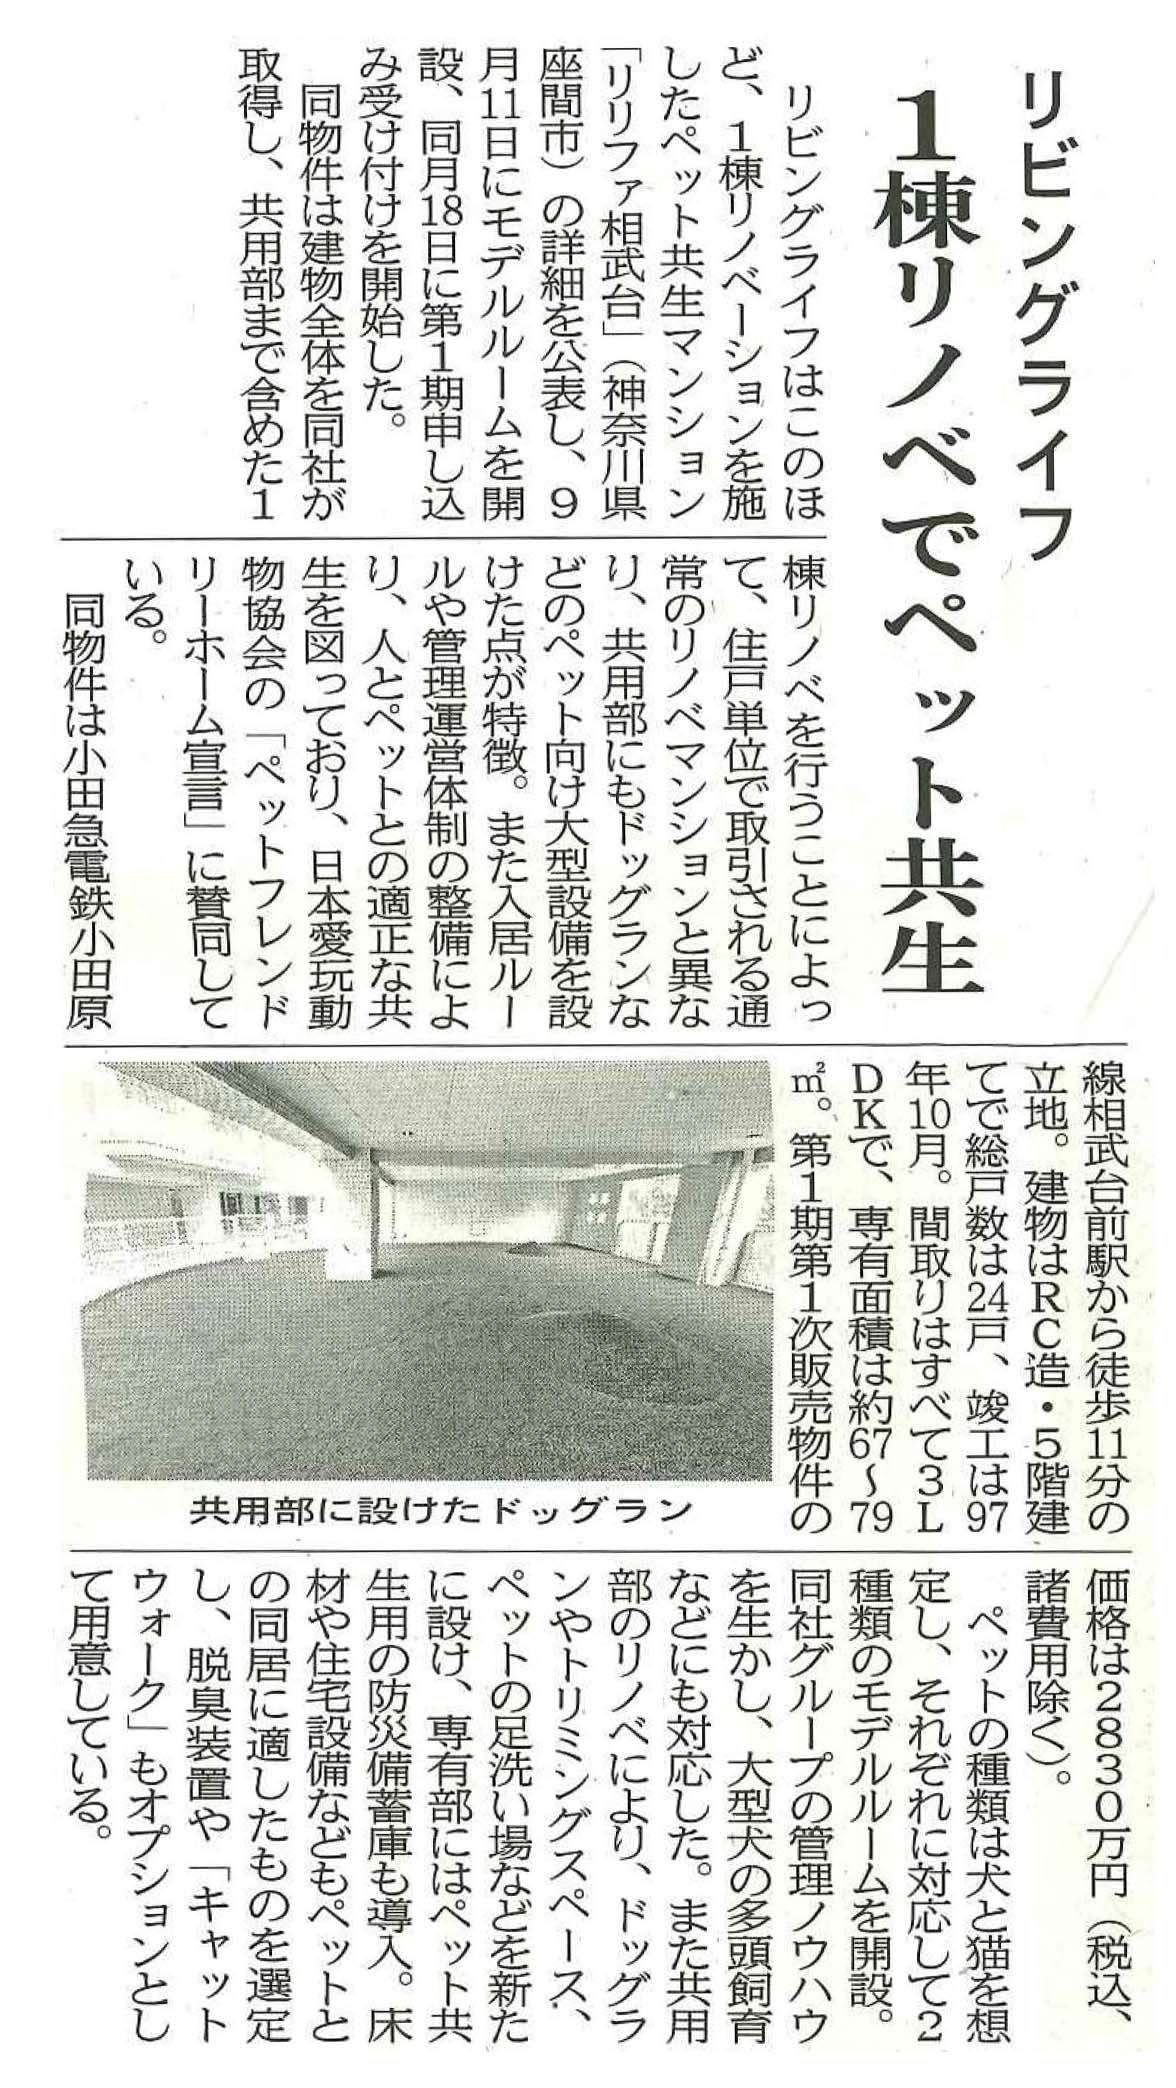 「リリファ相武台」が『住宅新報 9/21号』に掲載されました。